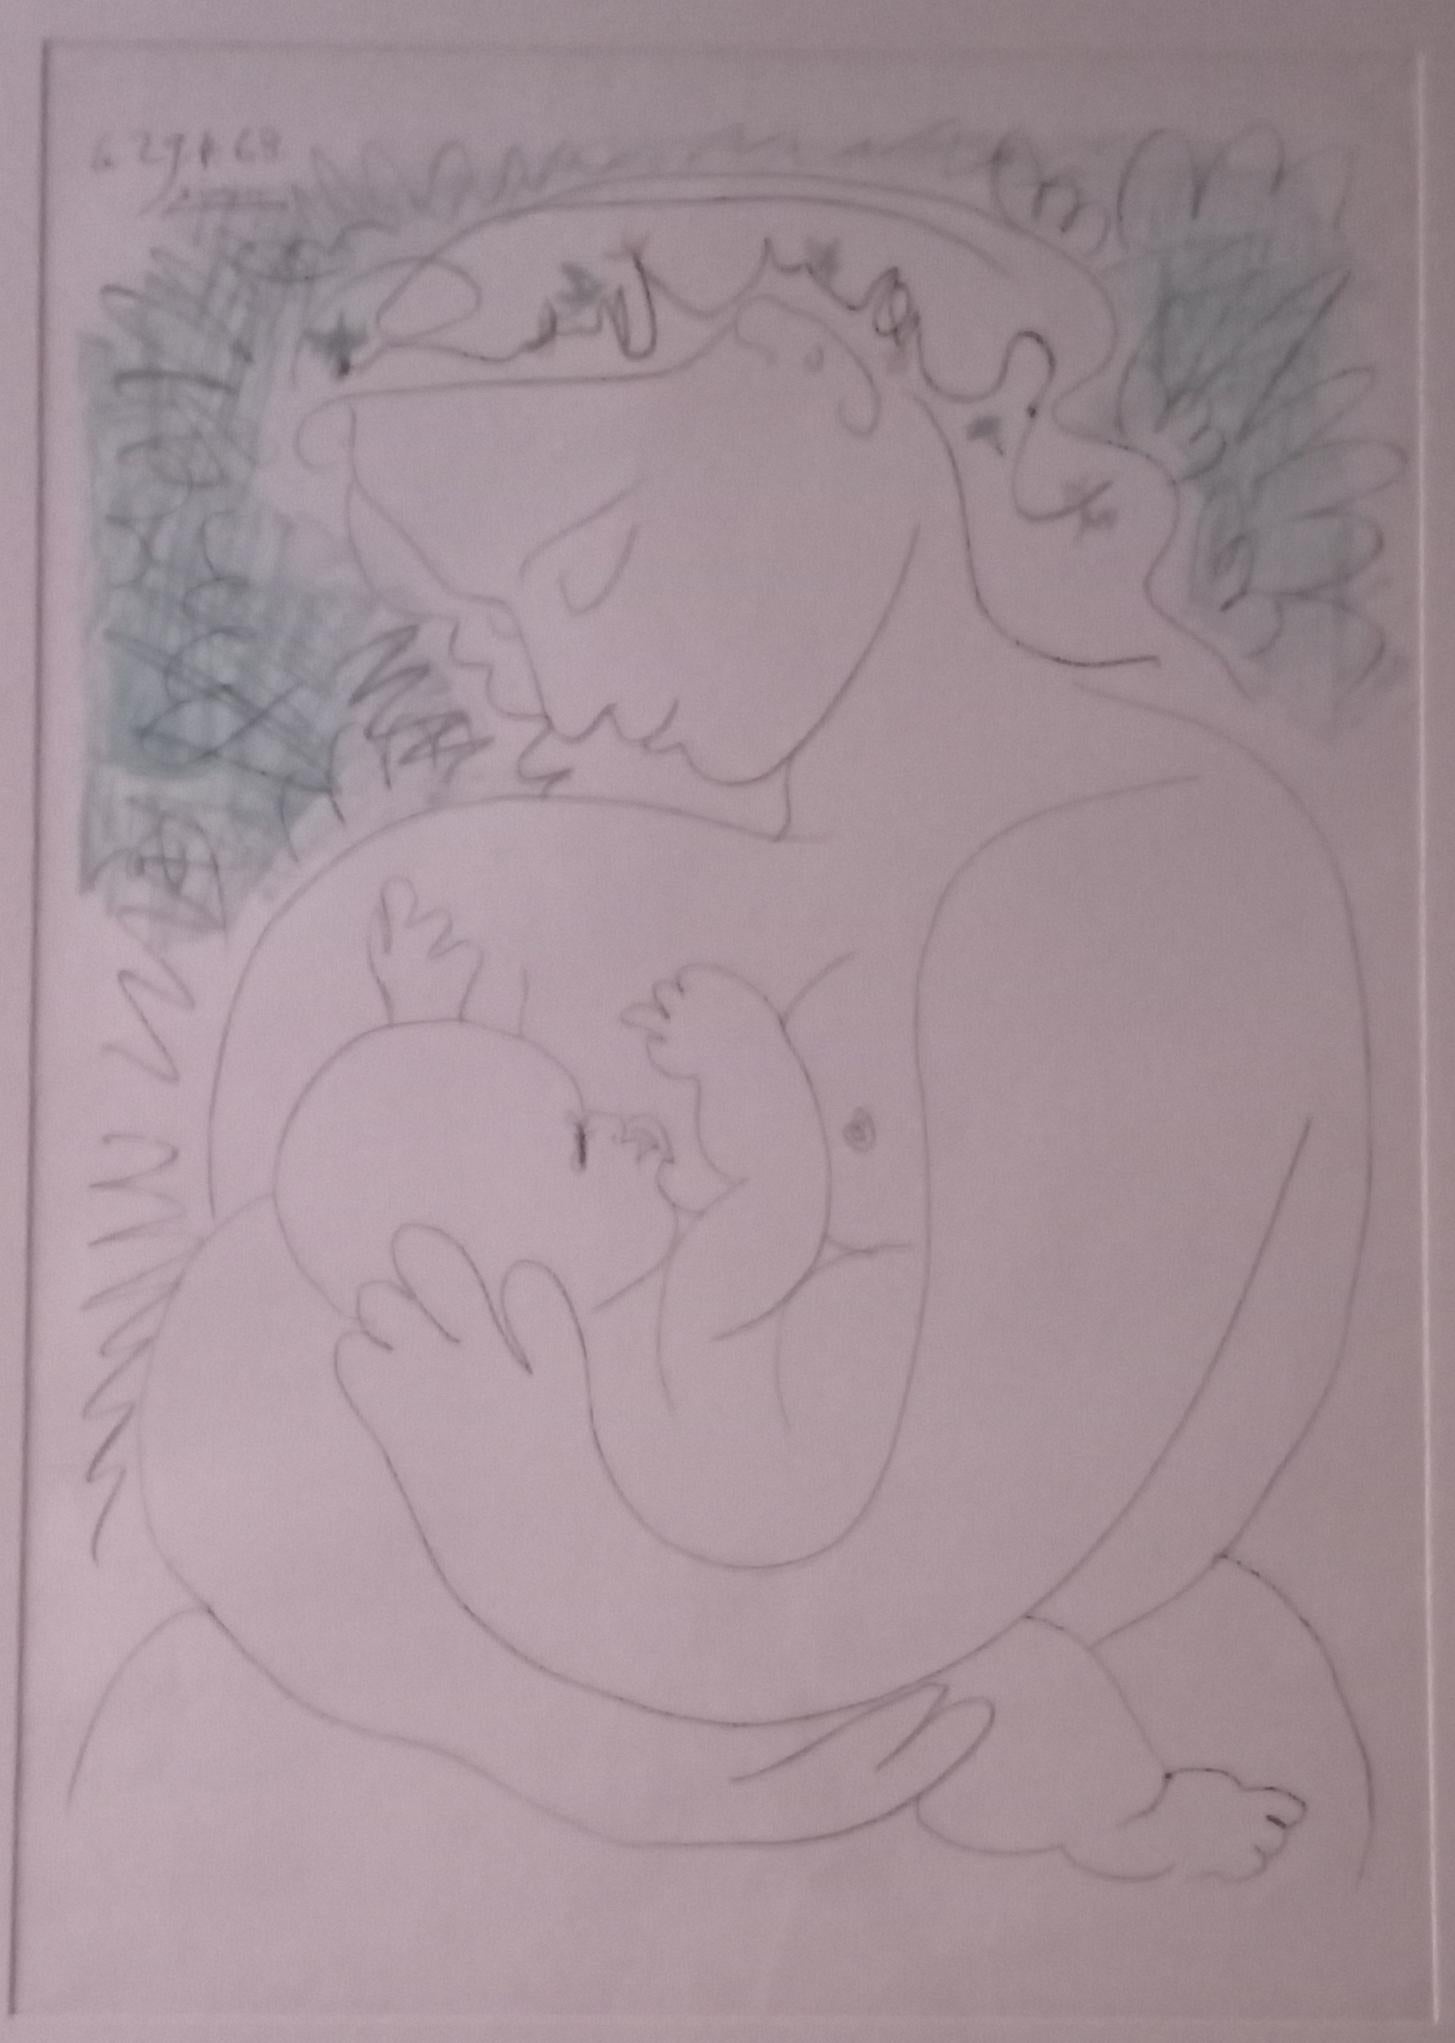 Grande Maternité - Print by Pablo Picasso